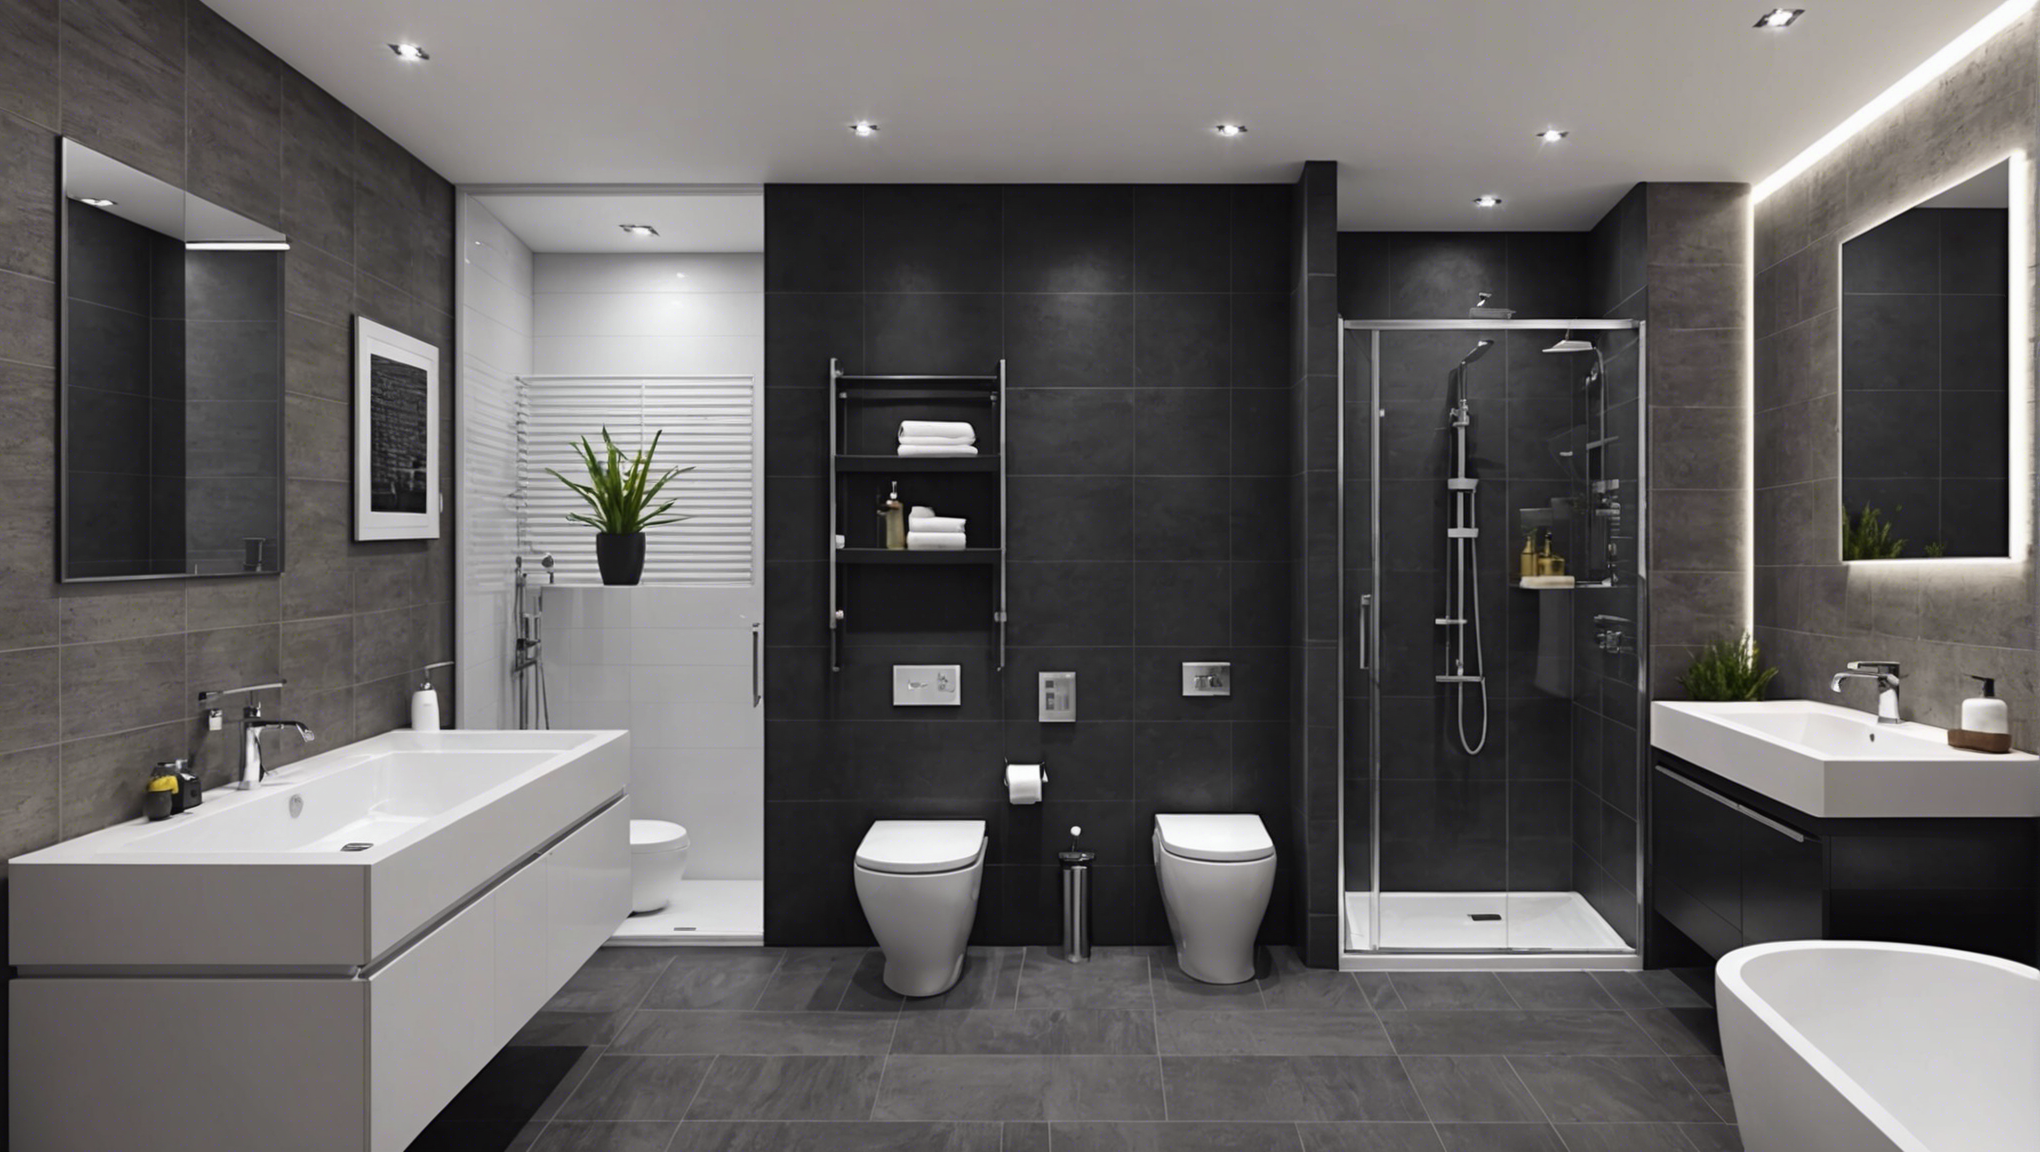 découvrez comment moderniser et sublimer votre salle de bain avec nos conseils pour un espace moderne et élégant.